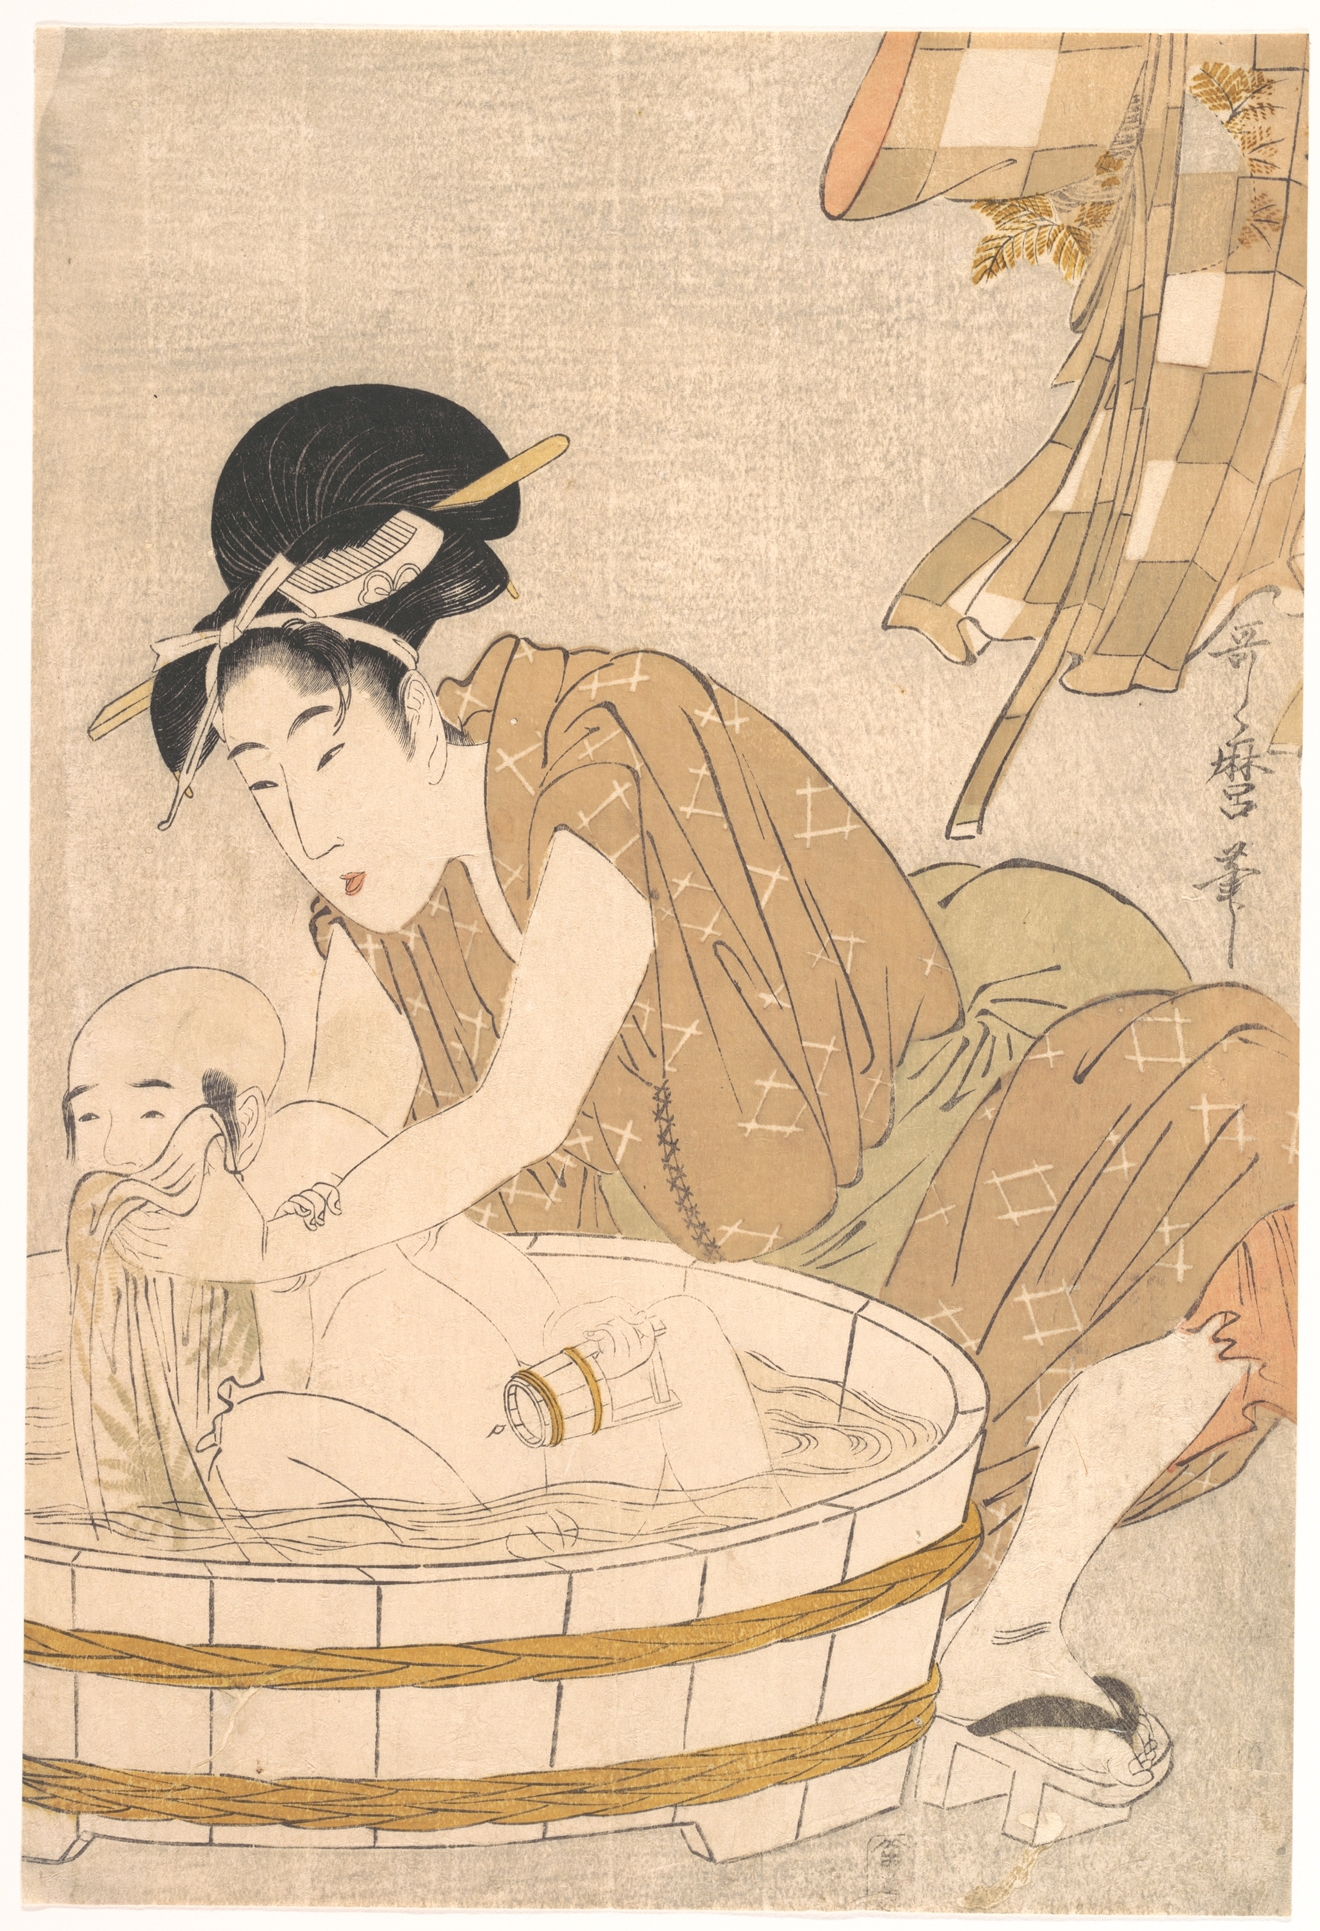 Czas kąpieli by Kitagawa Utamaro - ok. 1801 - 37,3 x 25,1 cm 